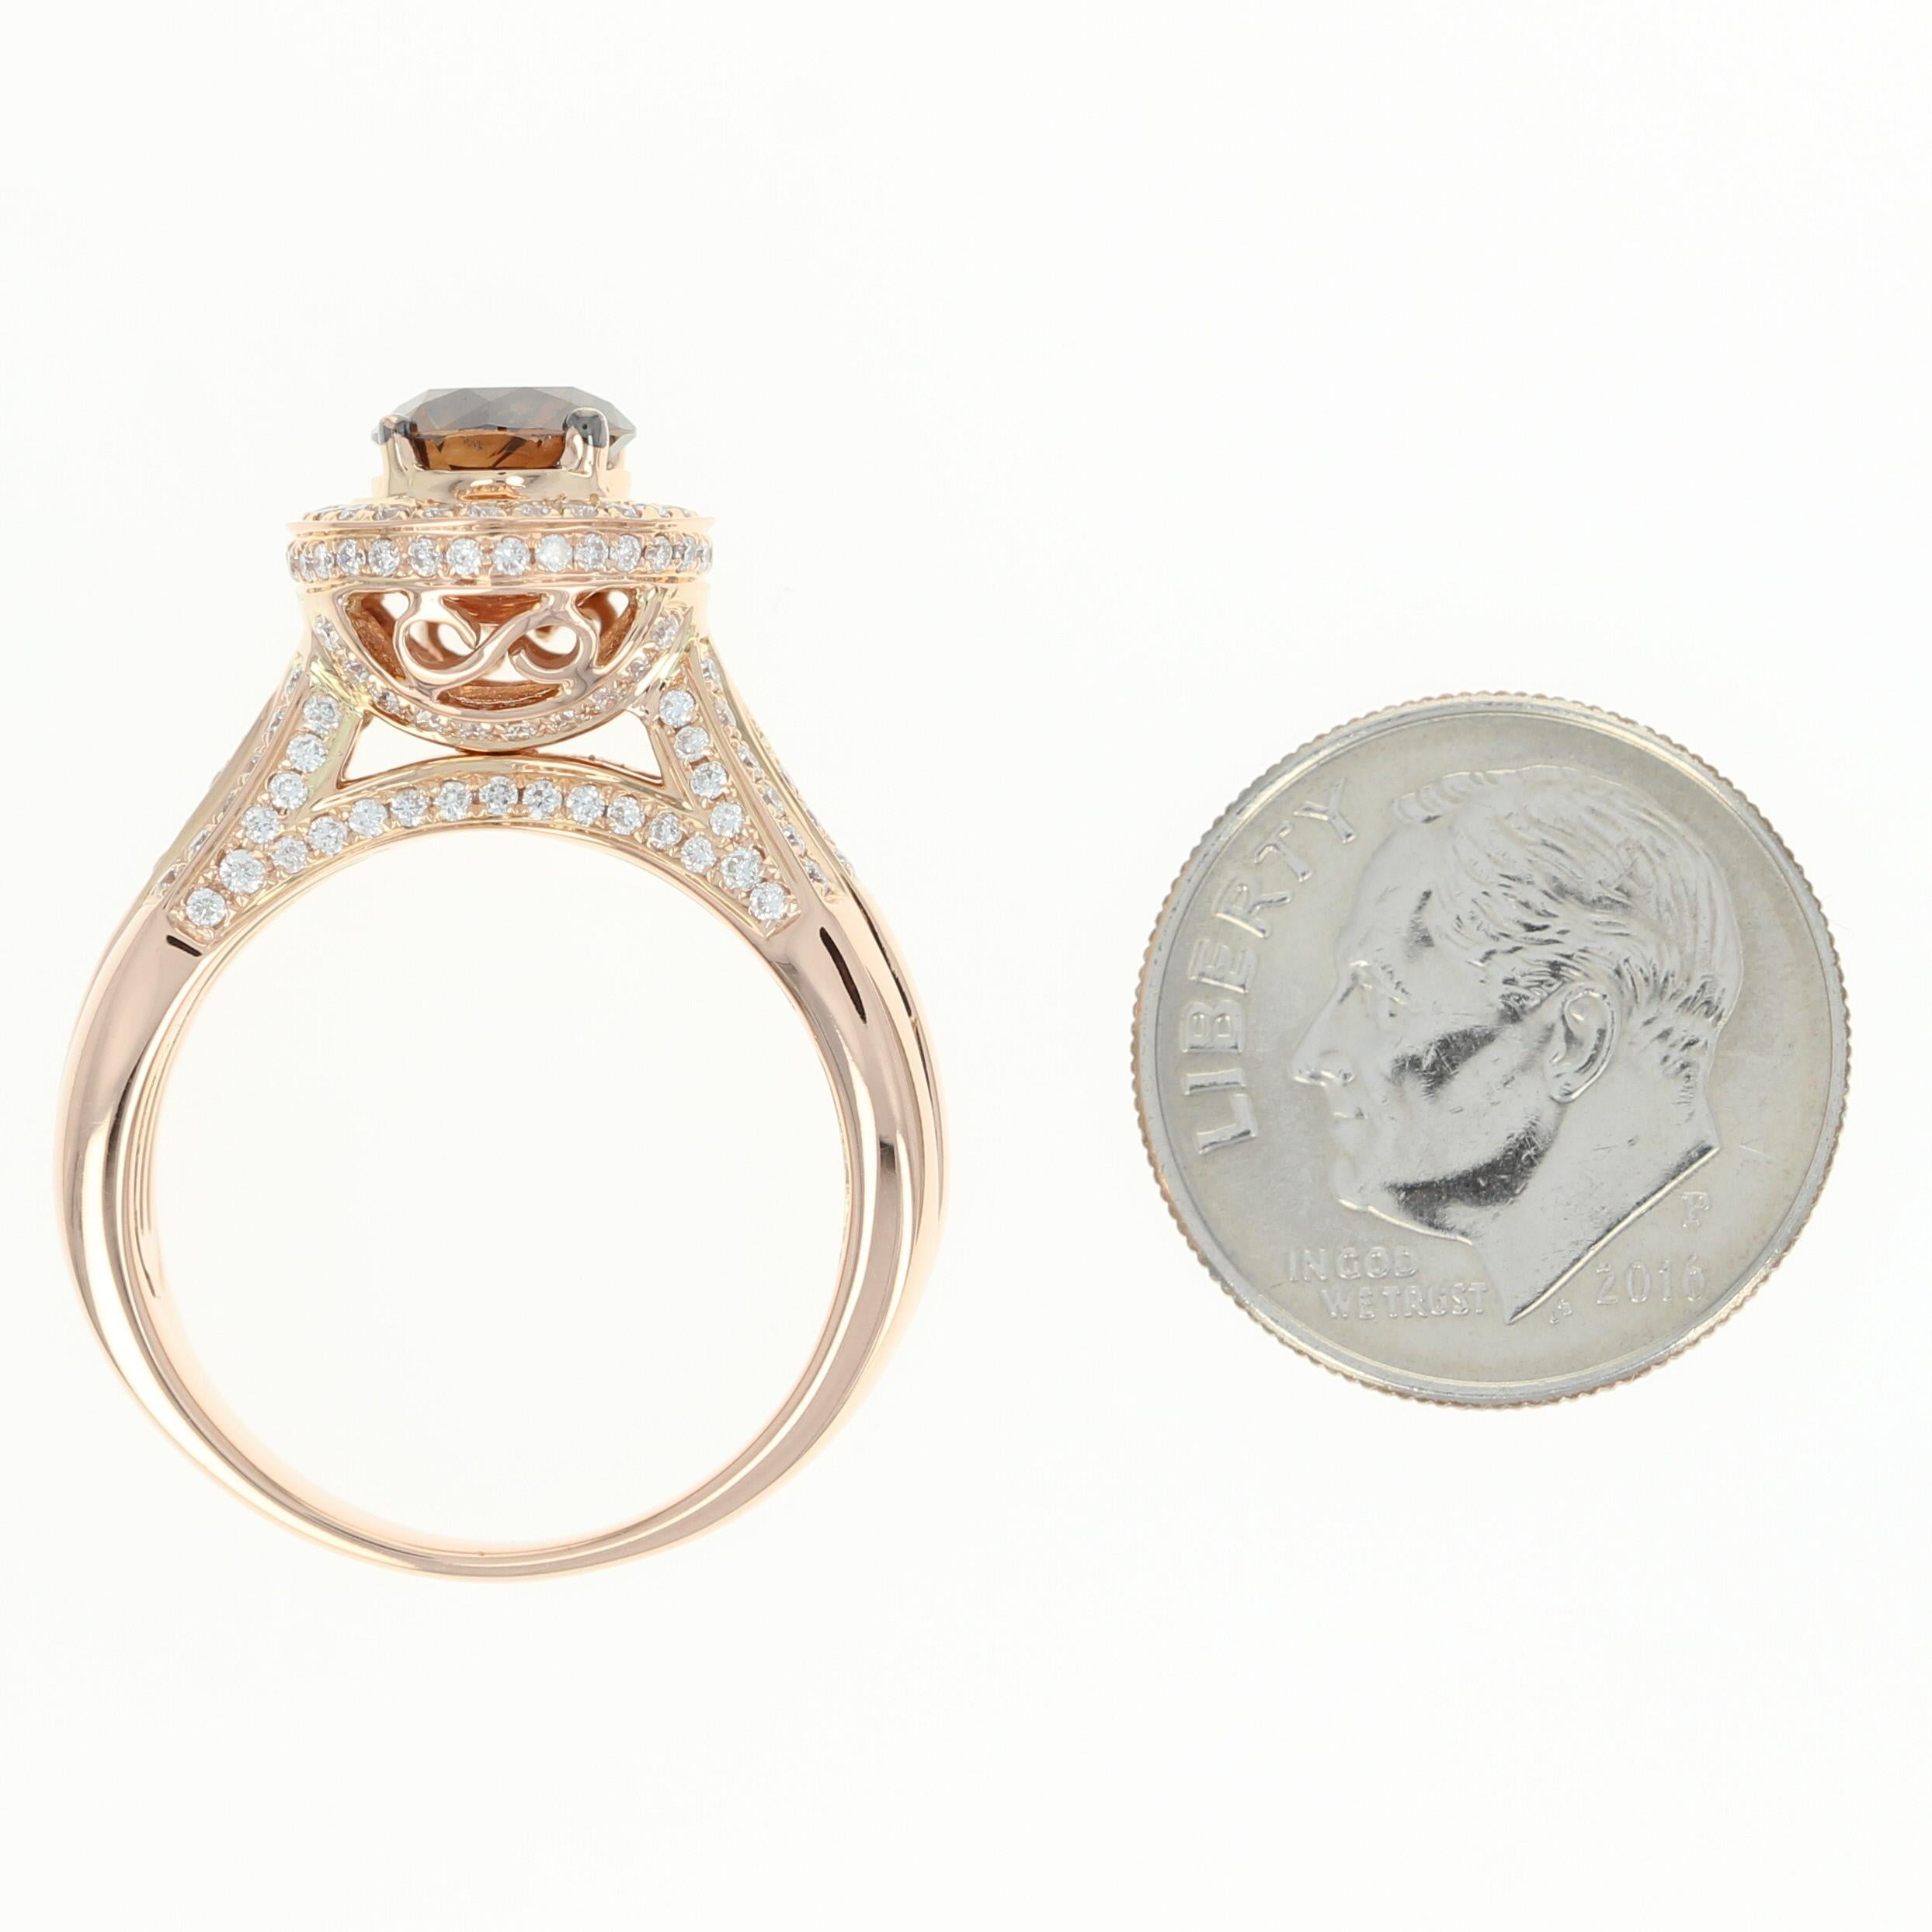 Le Vian Diamond Halo Ring, 18 Karat Rose Gold Round Cut 1.86 Carat 2